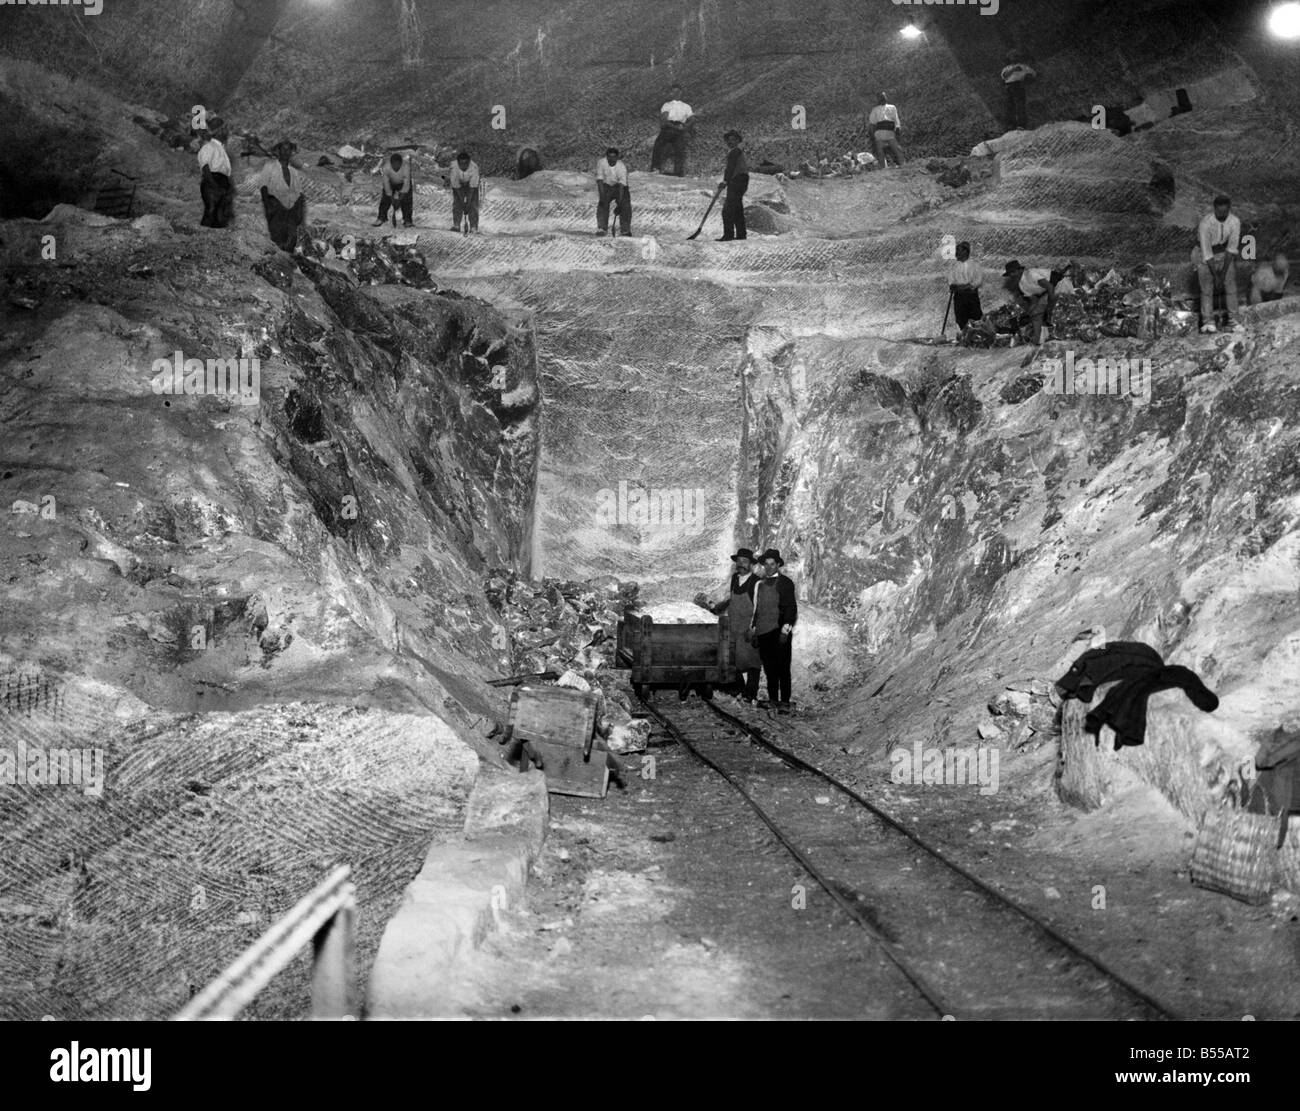 Salz Minen von Rumänien: Auftreten von Eis und Schnee 400 Fuß unter der Oberfläche bei Salt mines Slanic Rumänien. Die Arbeiter sind sehr gesund. Meine produziert 80.000 Tonnen pro Jahr, eine staatliche Industrie 500 Männer beschäftigt. Die Mine wurde viele Jahrhunderte lang wohl von Römern gearbeitet. Januar 1927 P012175 Stockfoto